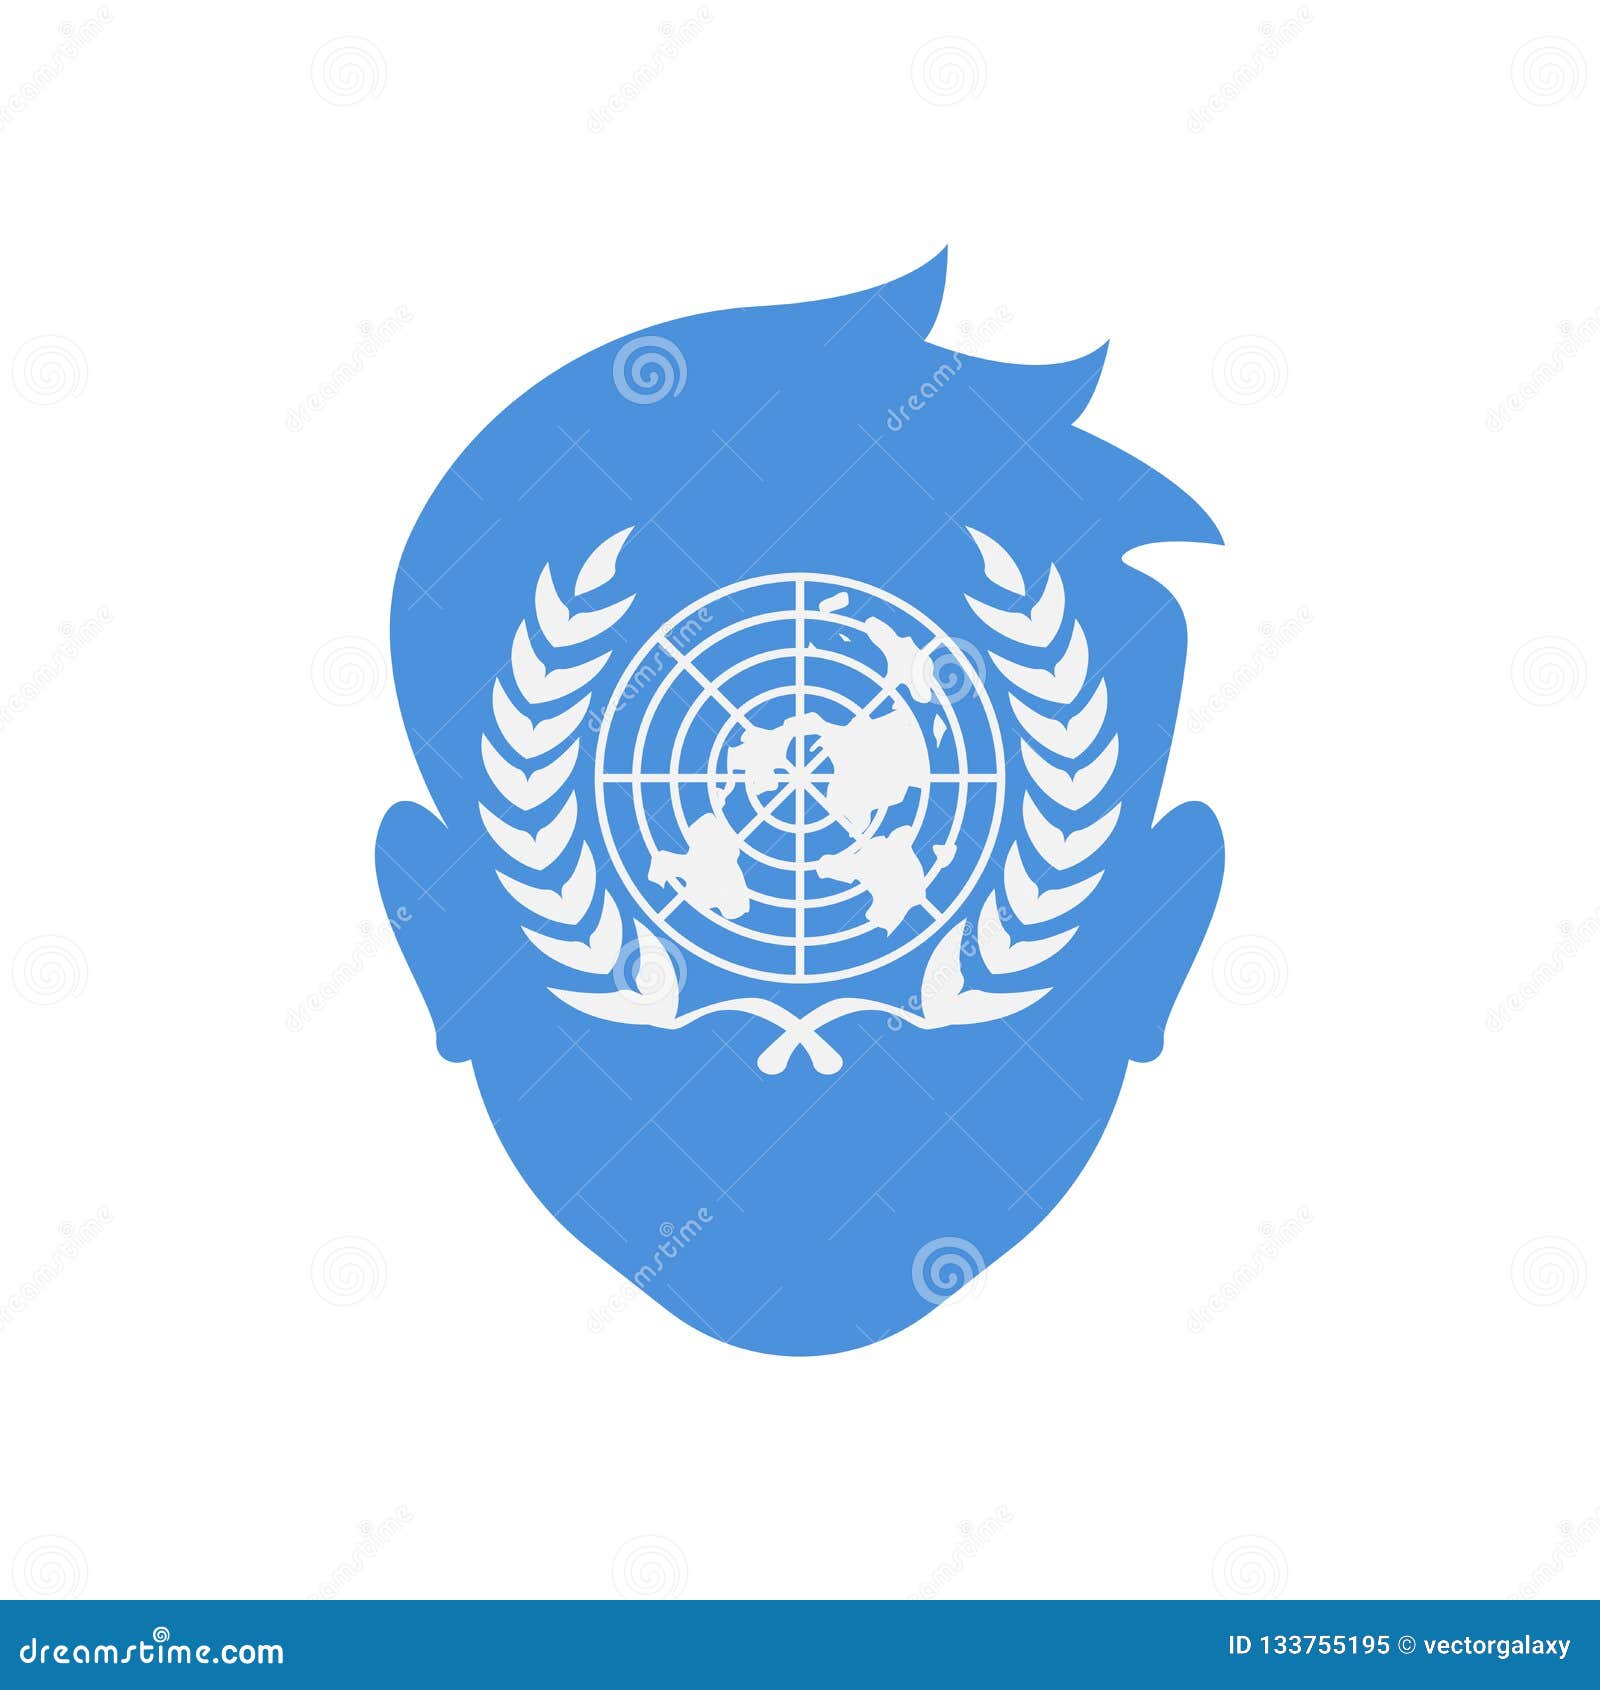 Biểu tượng Liên Hợp Quốc: Biểu tượng của Liên Hợp Quốc là một hình ảnh đầy sức mạnh và ý nghĩa. Có ba yếu tố chính trong biểu tượng này, đó là lá phong, hình chữ nhật và trái đất. Nhìn vào biểu tượng này, chúng ta có thể cảm nhận được lòng trung thành và quyết tâm của người dân thế giới trong việc đấu tranh cho sự bình yên và tiến bộ. Hãy cùng nhau khám phá hình ảnh về biểu tượng Liên Hợp Quốc như một lời cam kết cho một thế giới hoà bình.